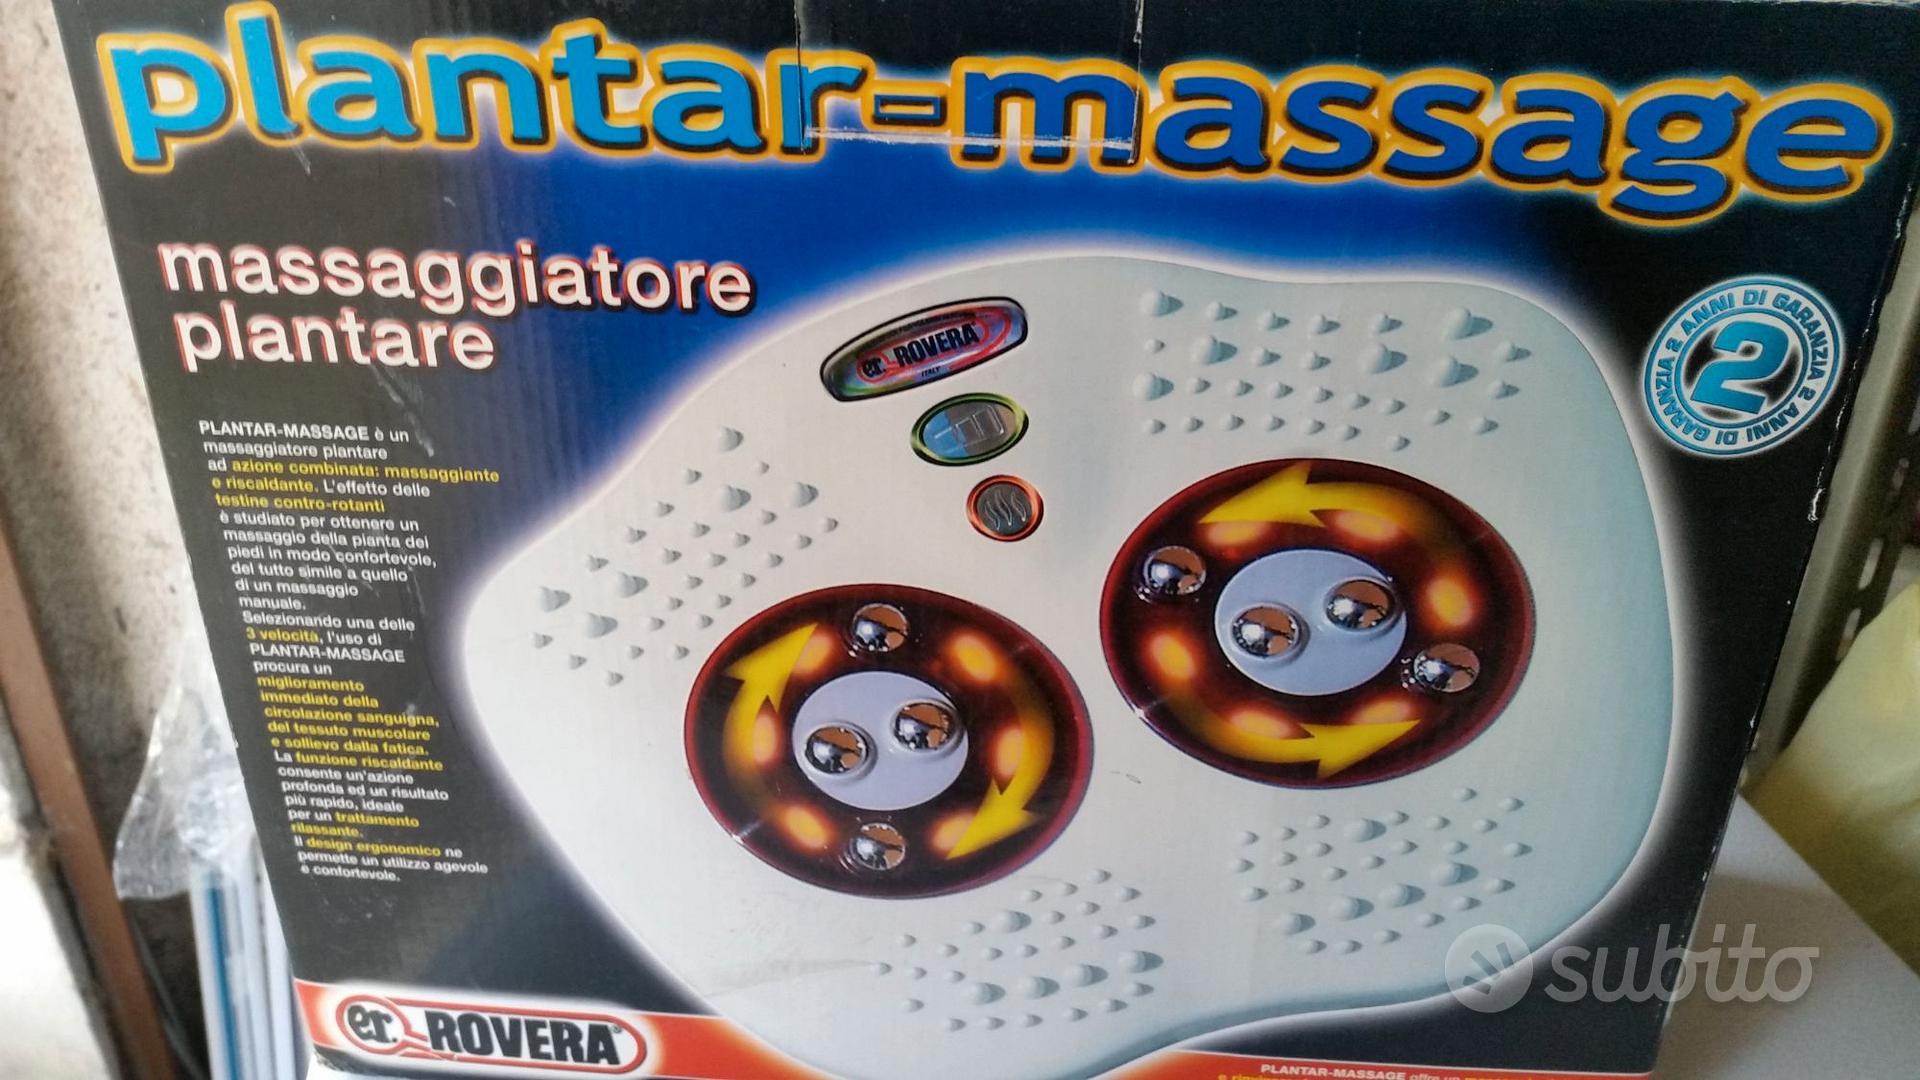 Massaggiatore plantare - Elettrodomestici In vendita a Bergamo